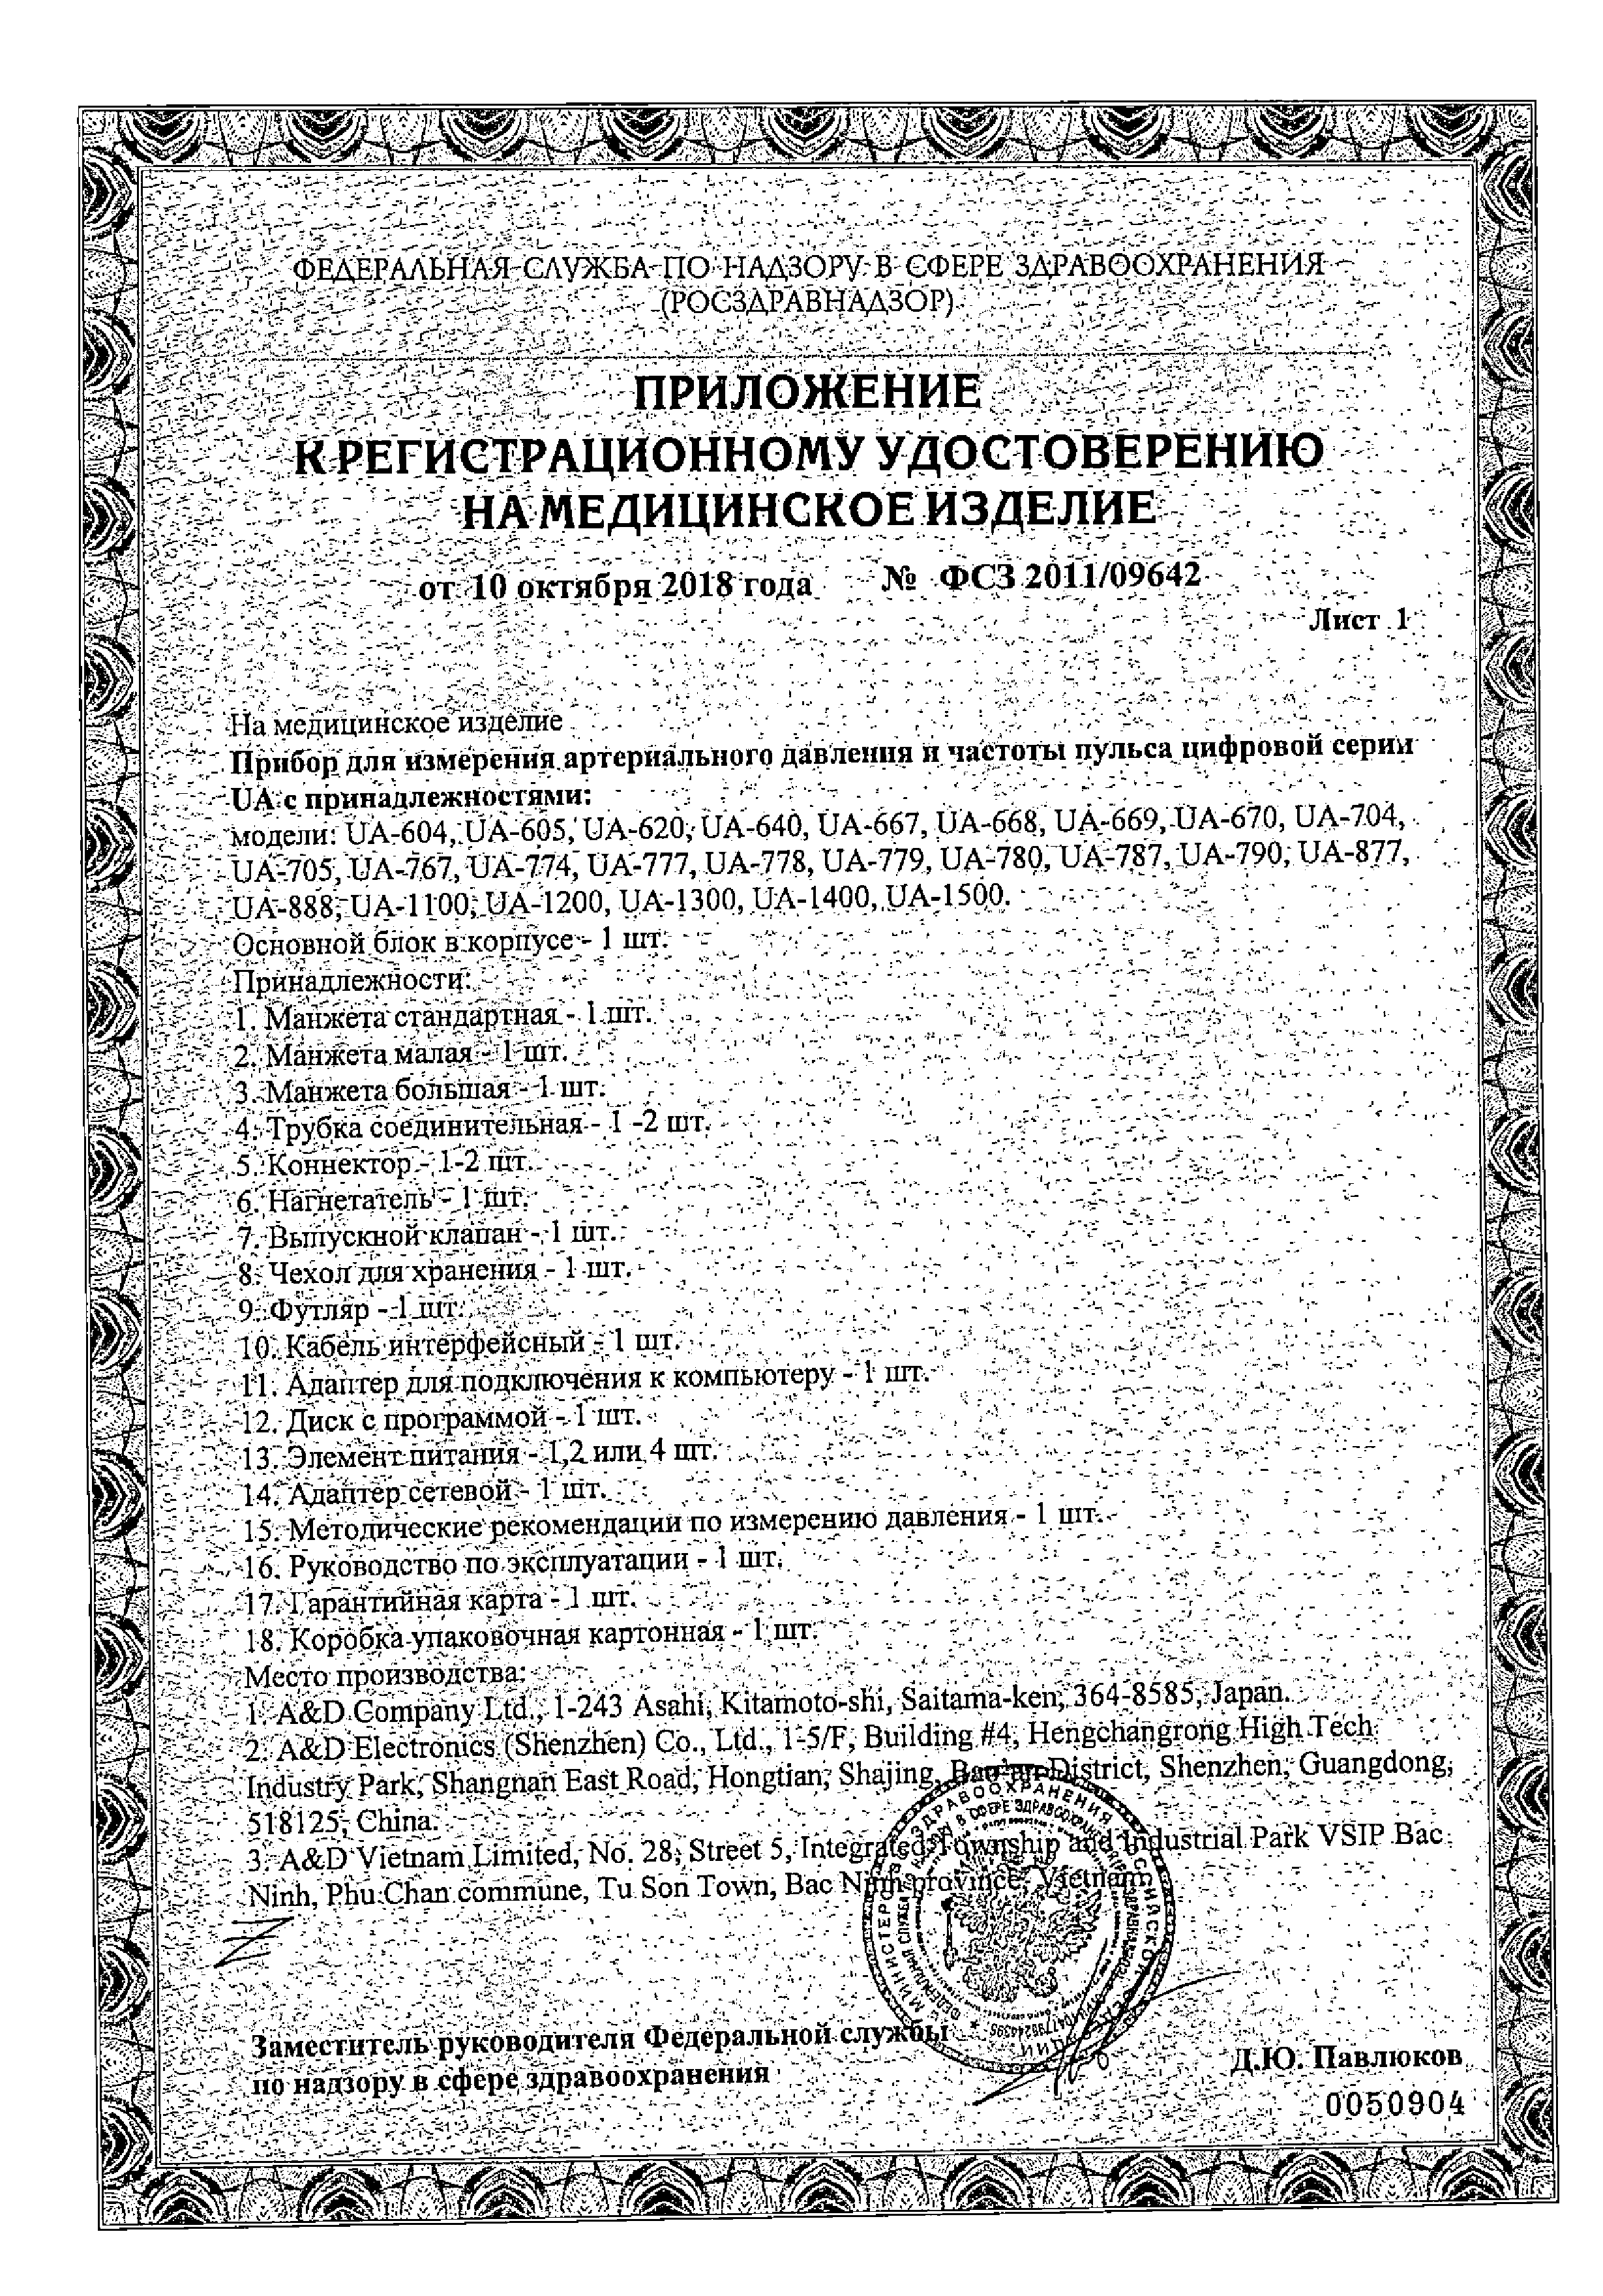 Тонометр автоматический UA-1300 говорящий сертификат